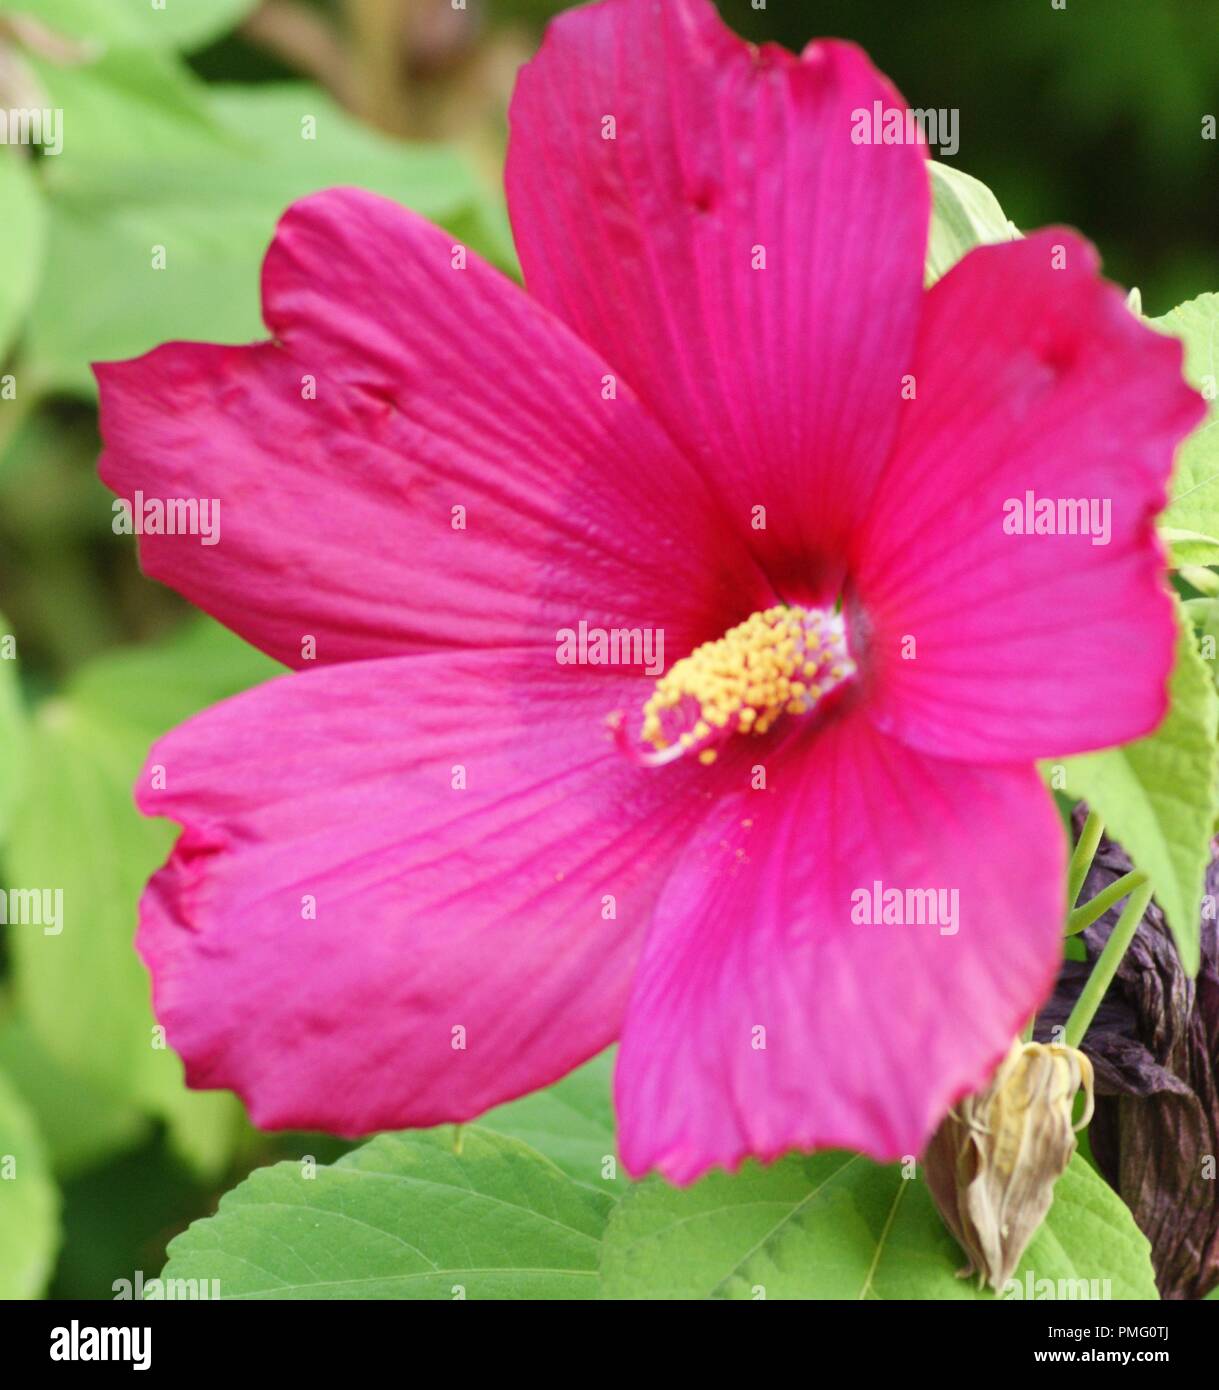 gros plan d'une fleur rose d'Hibiscus moscheutos Hibiscus des marais, close-up of Hibiscus moscheutos pink flower, rose mallow, swamp rose-mallow,crim Stock Photo